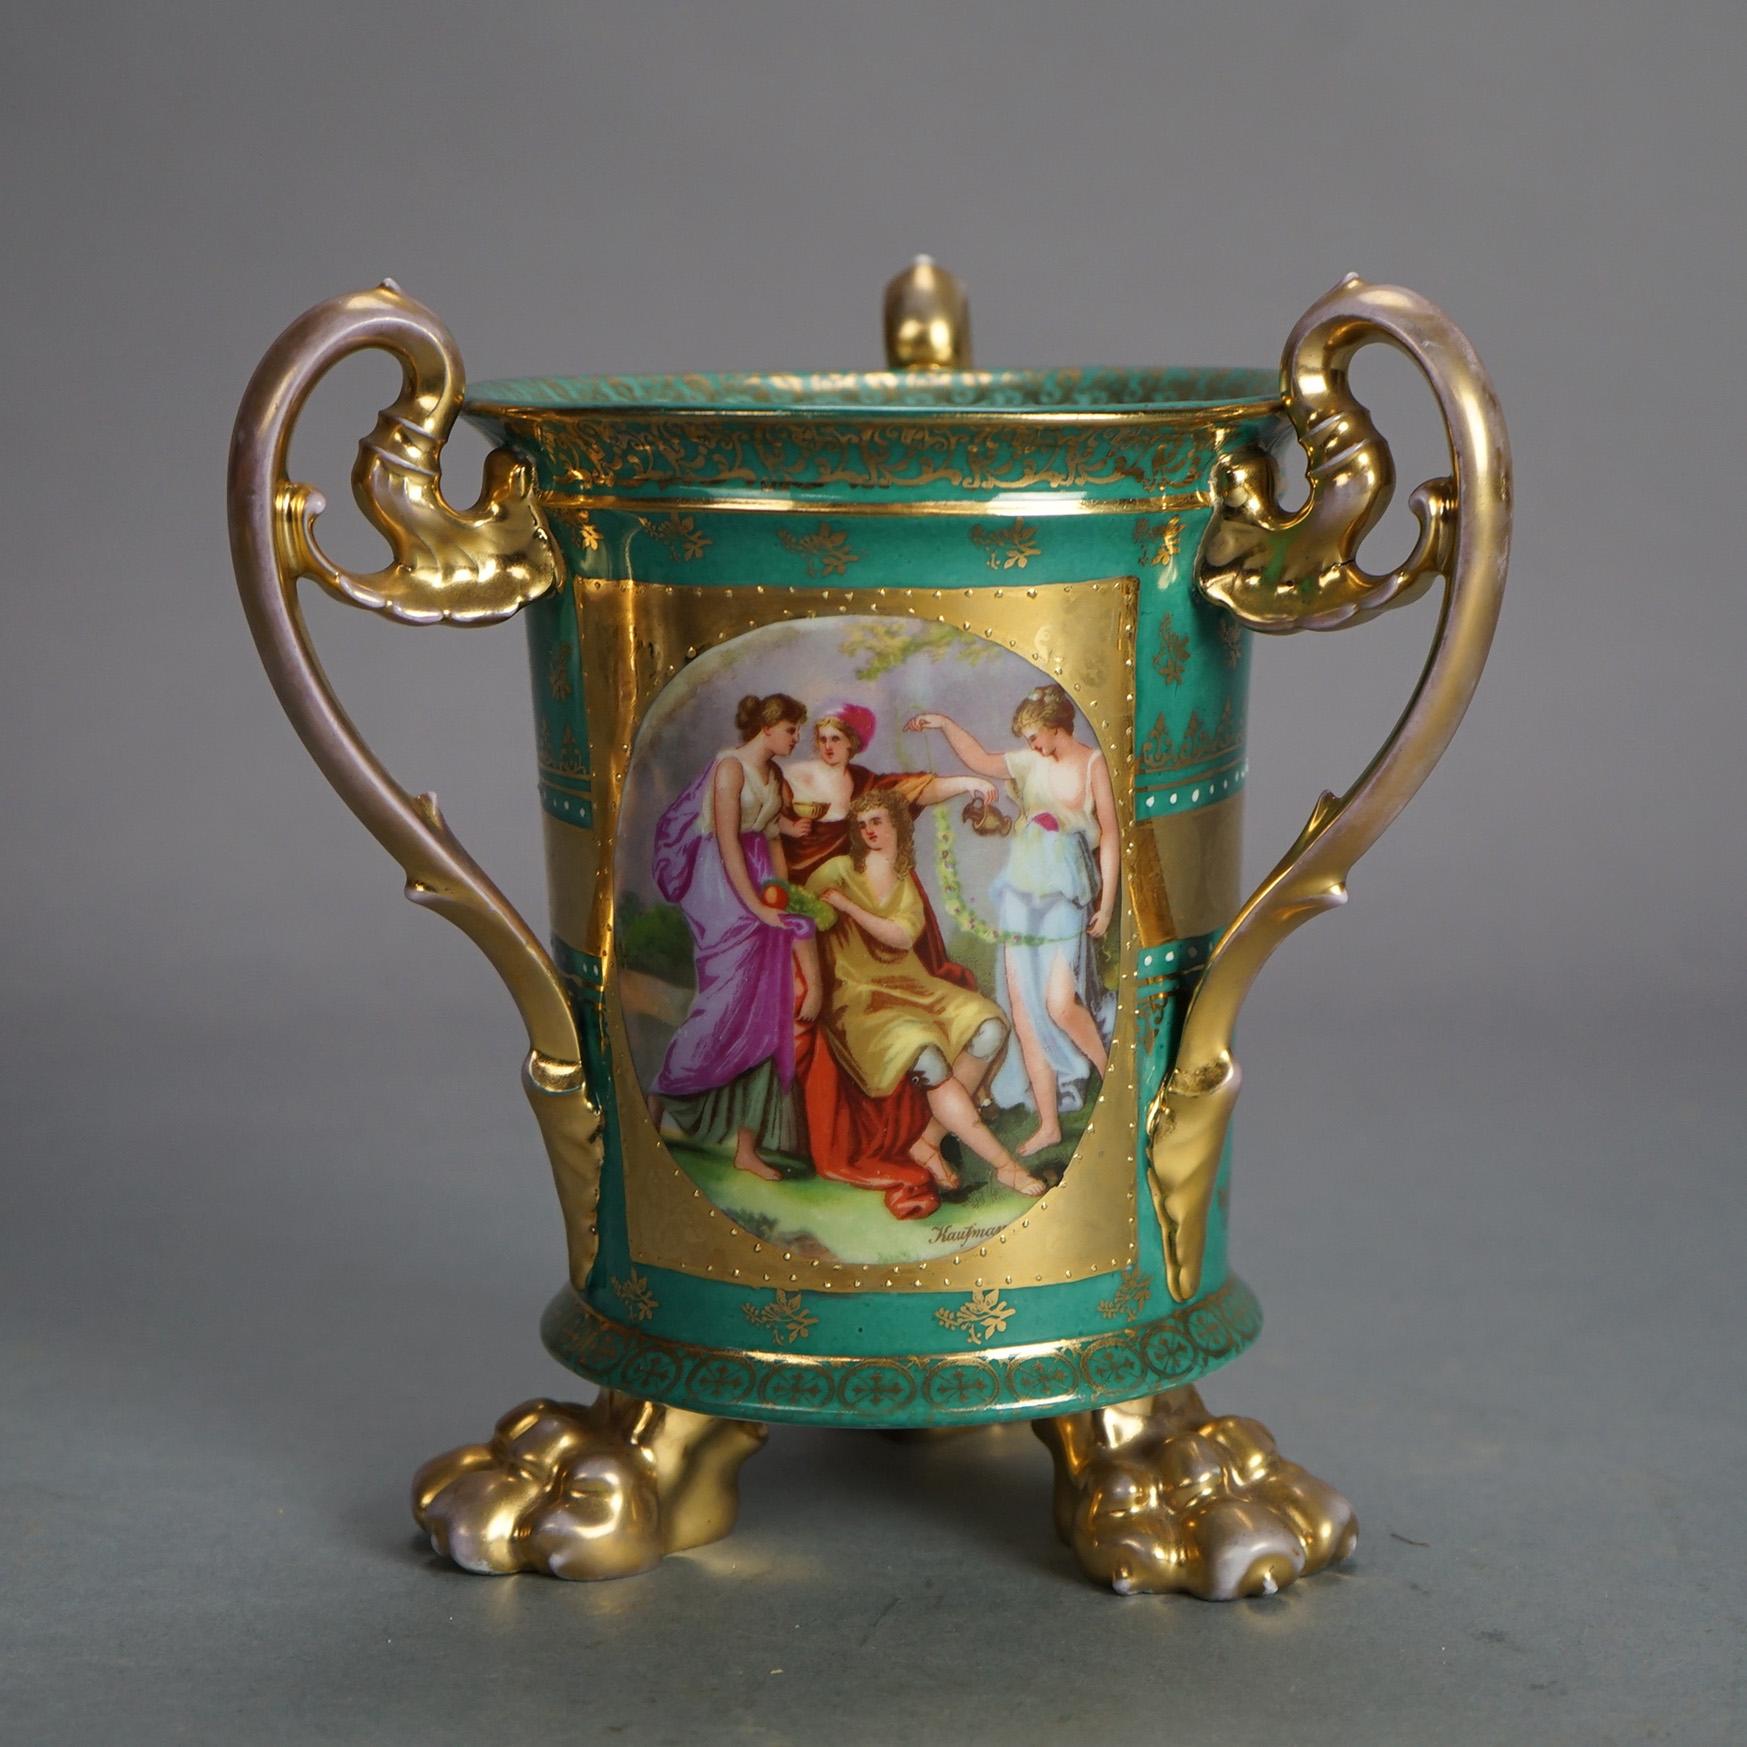 Ancien vase à portrait en porcelaine peinte à la main de Vienne royale autrichienne avec scène classique, triple poignée en forme de feuillage et pieds en forme de patte, vers 1900

Mesures - 7.75 